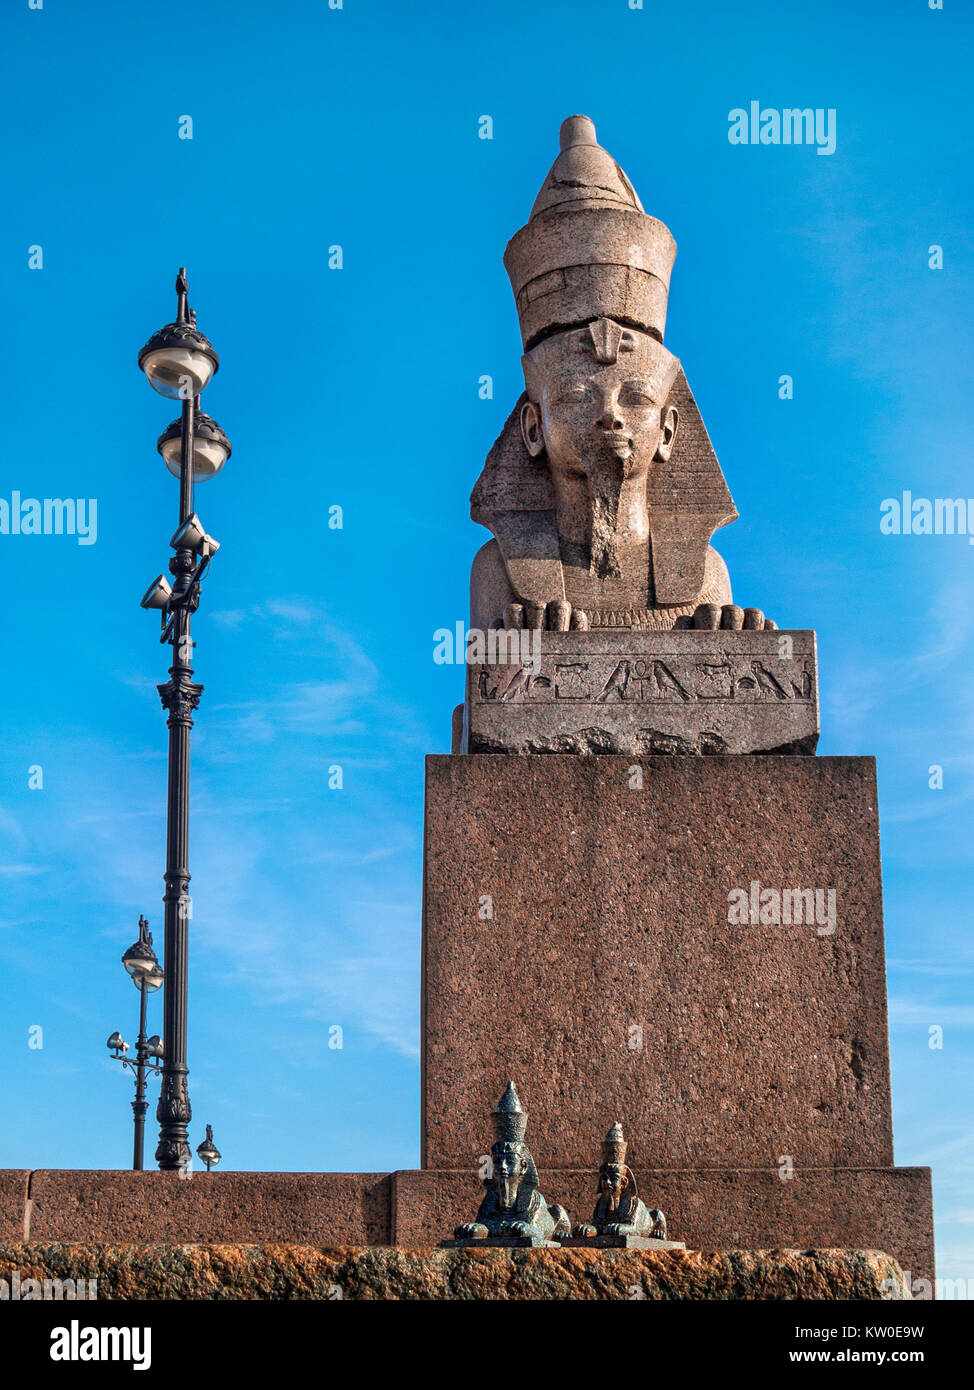 Eine große Ägyptische Sphinx auf dem Podest und zwei kleinen Sphingen neben einem großen Stand auf dem Granit Universität Ufer der Newa in der Cit Stockfoto